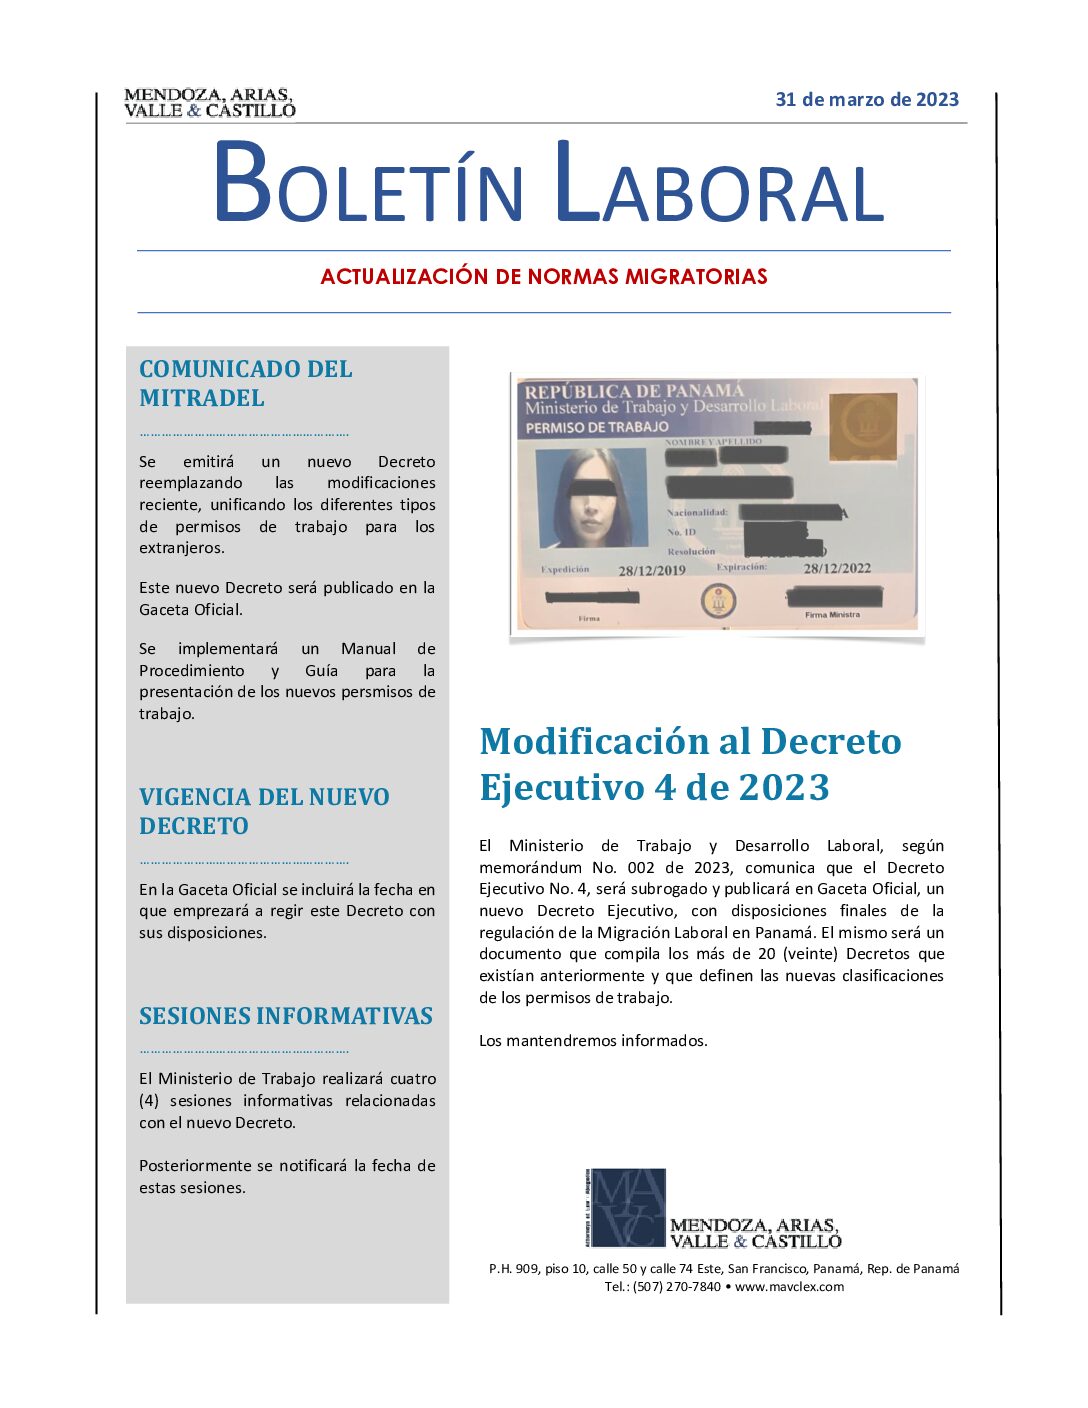 BOLETIN LABORAL MAVCLEX - Actualización de Normas Migratorias - marzo 2023